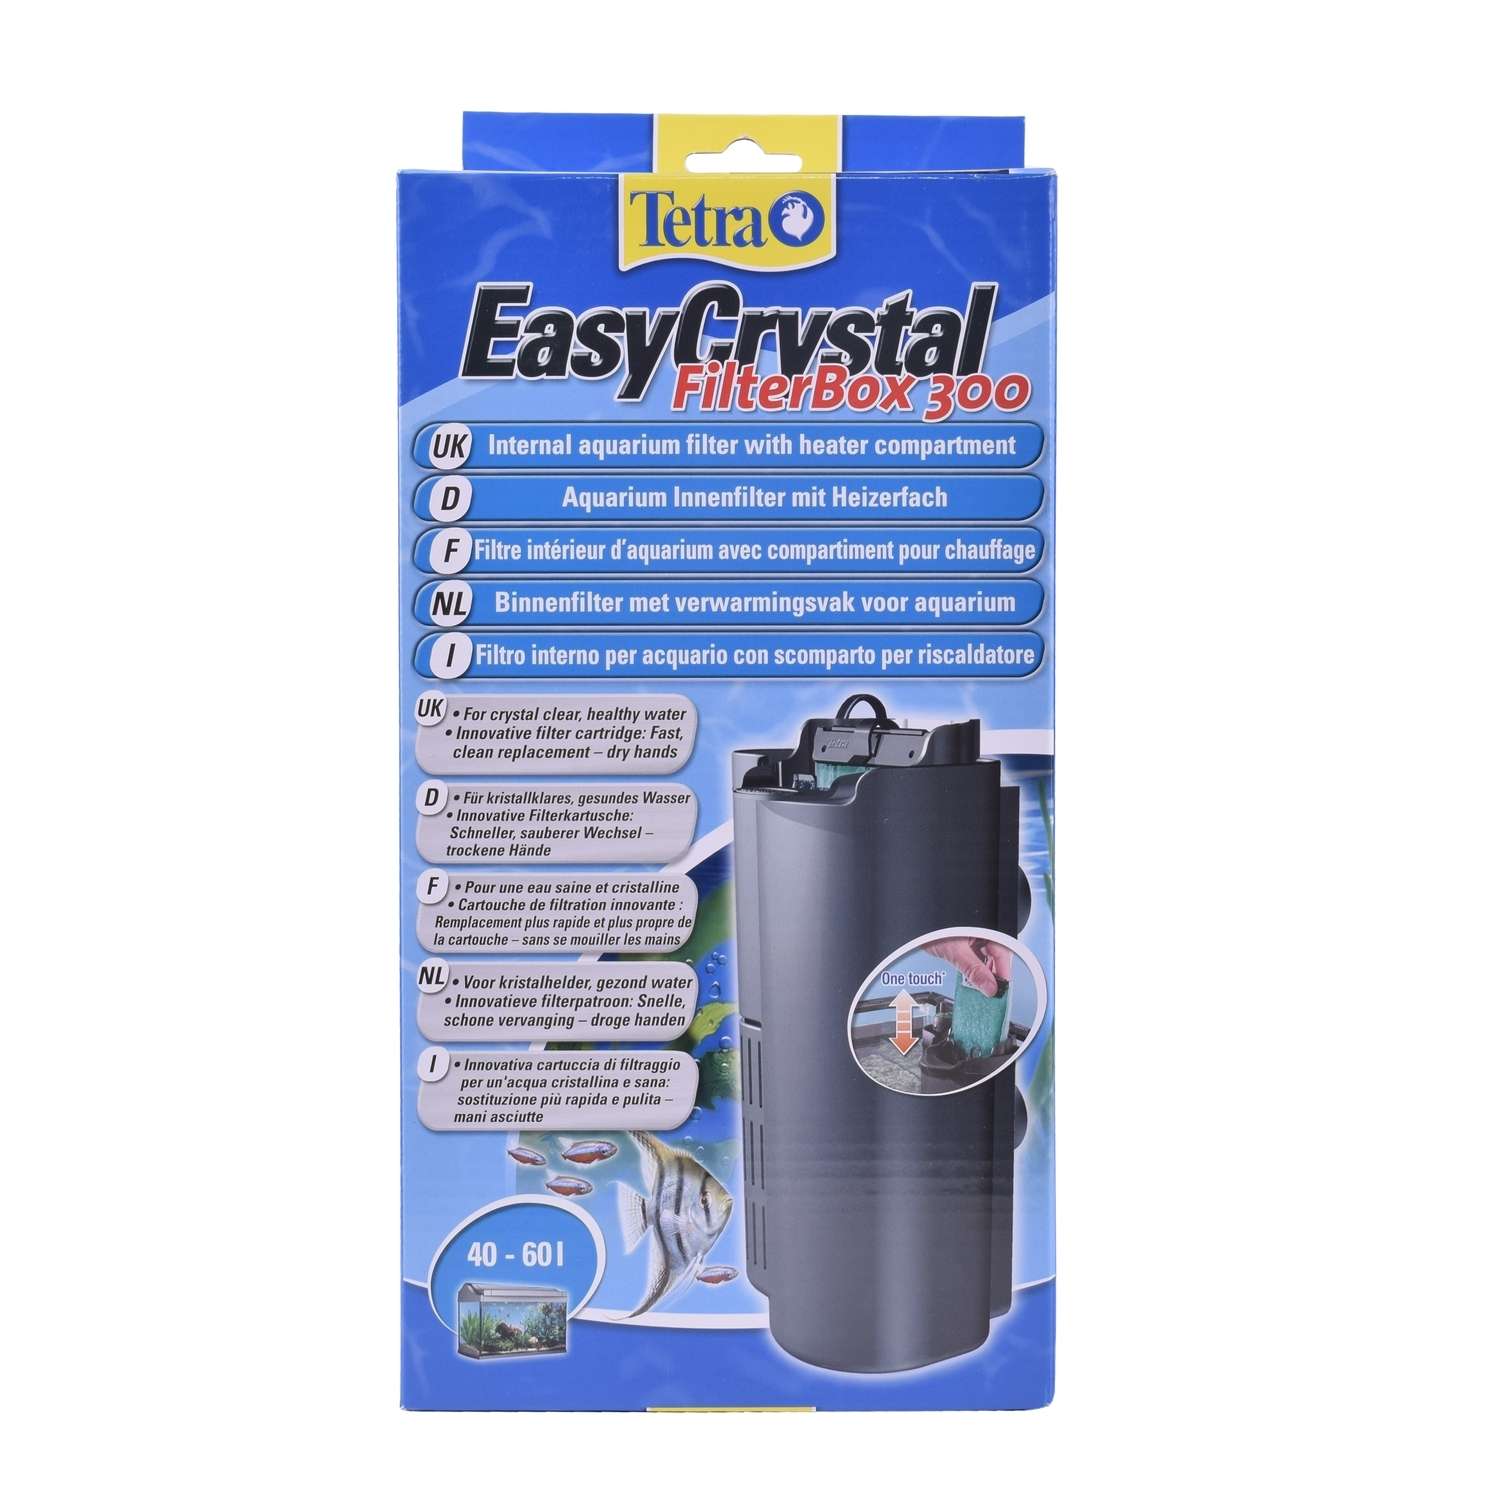 Фильтр для аквариумов Tetra EasyCrystal 300 Filter Box внутренний 40-60л - фото 2